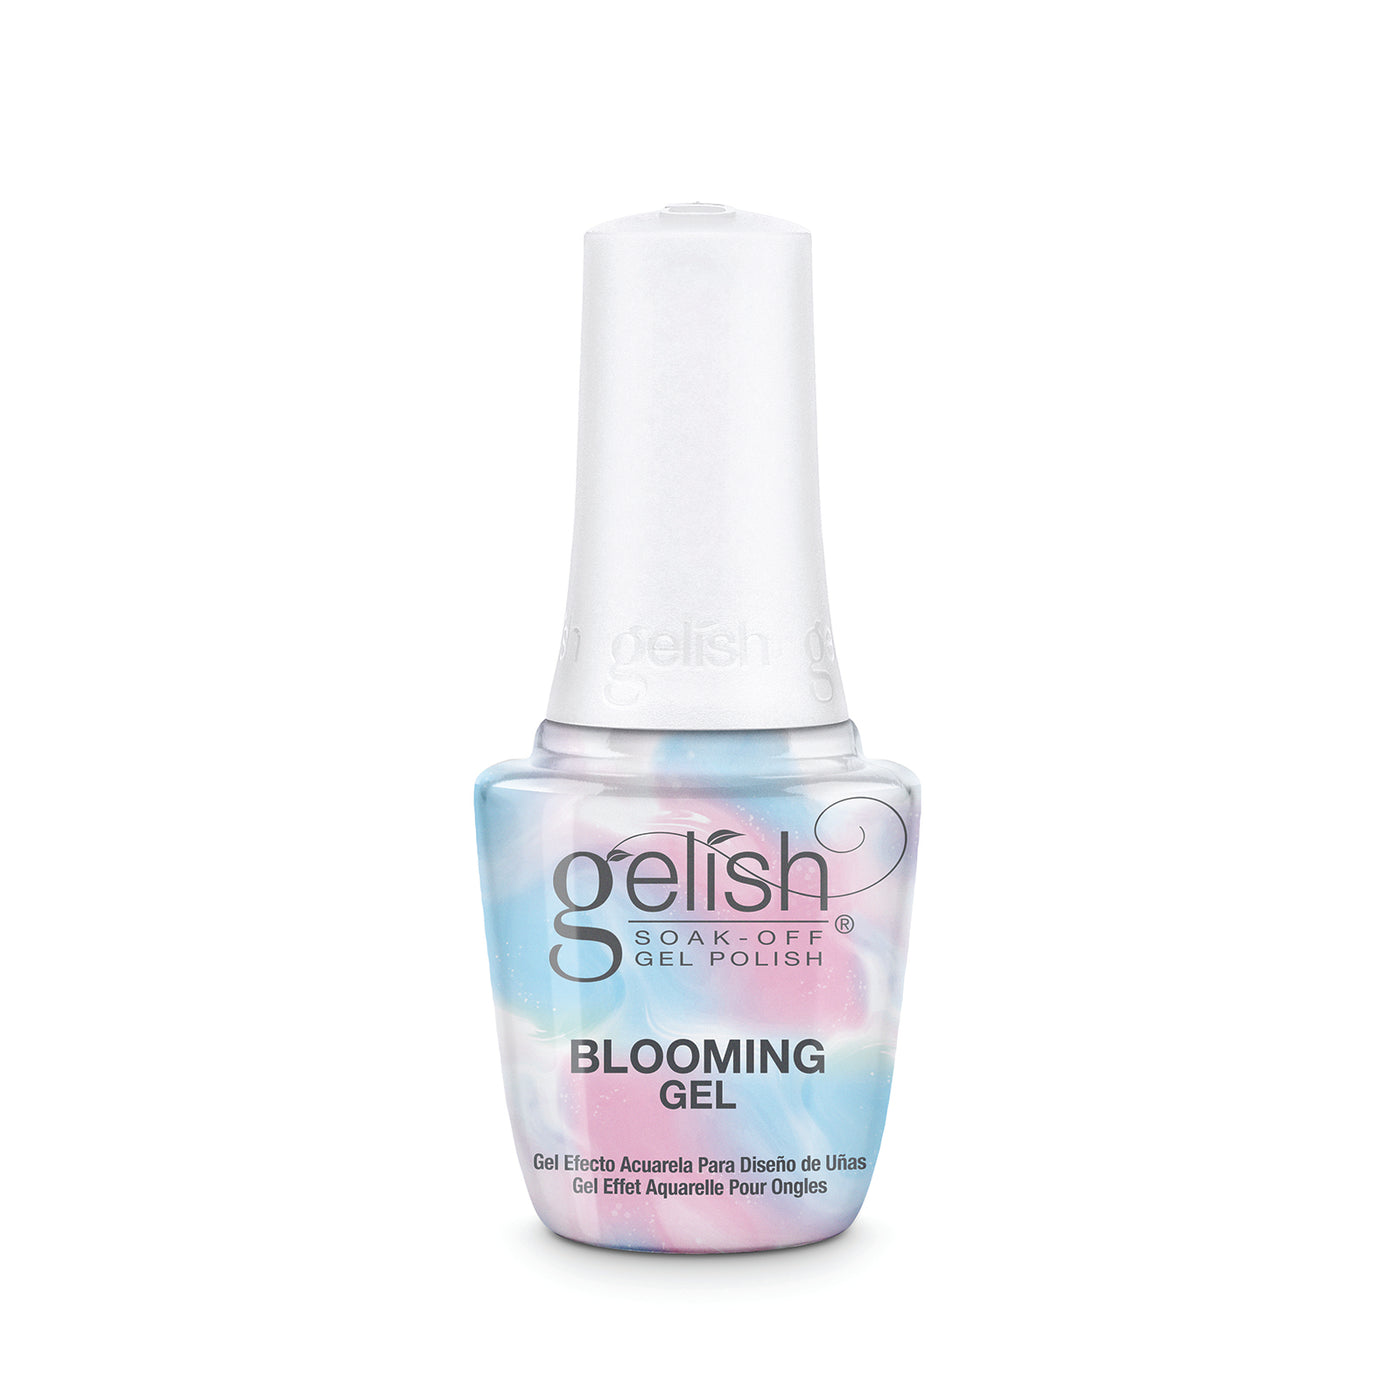 Gelish Blooming Gel (15ml) soak off gel polish